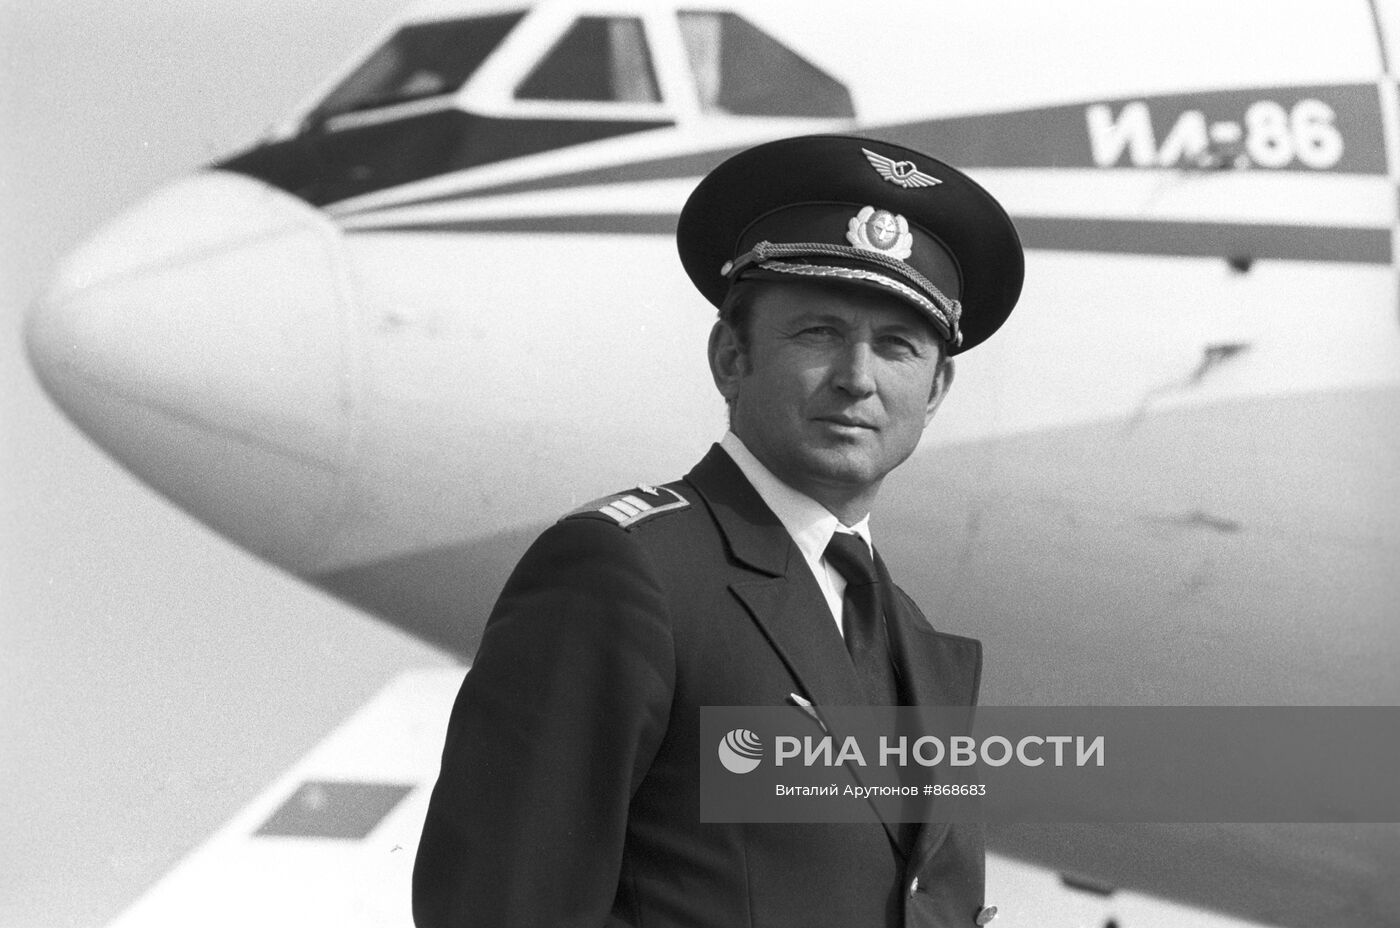 Виктор Одинец - капитан аэробуса ИЛ-86